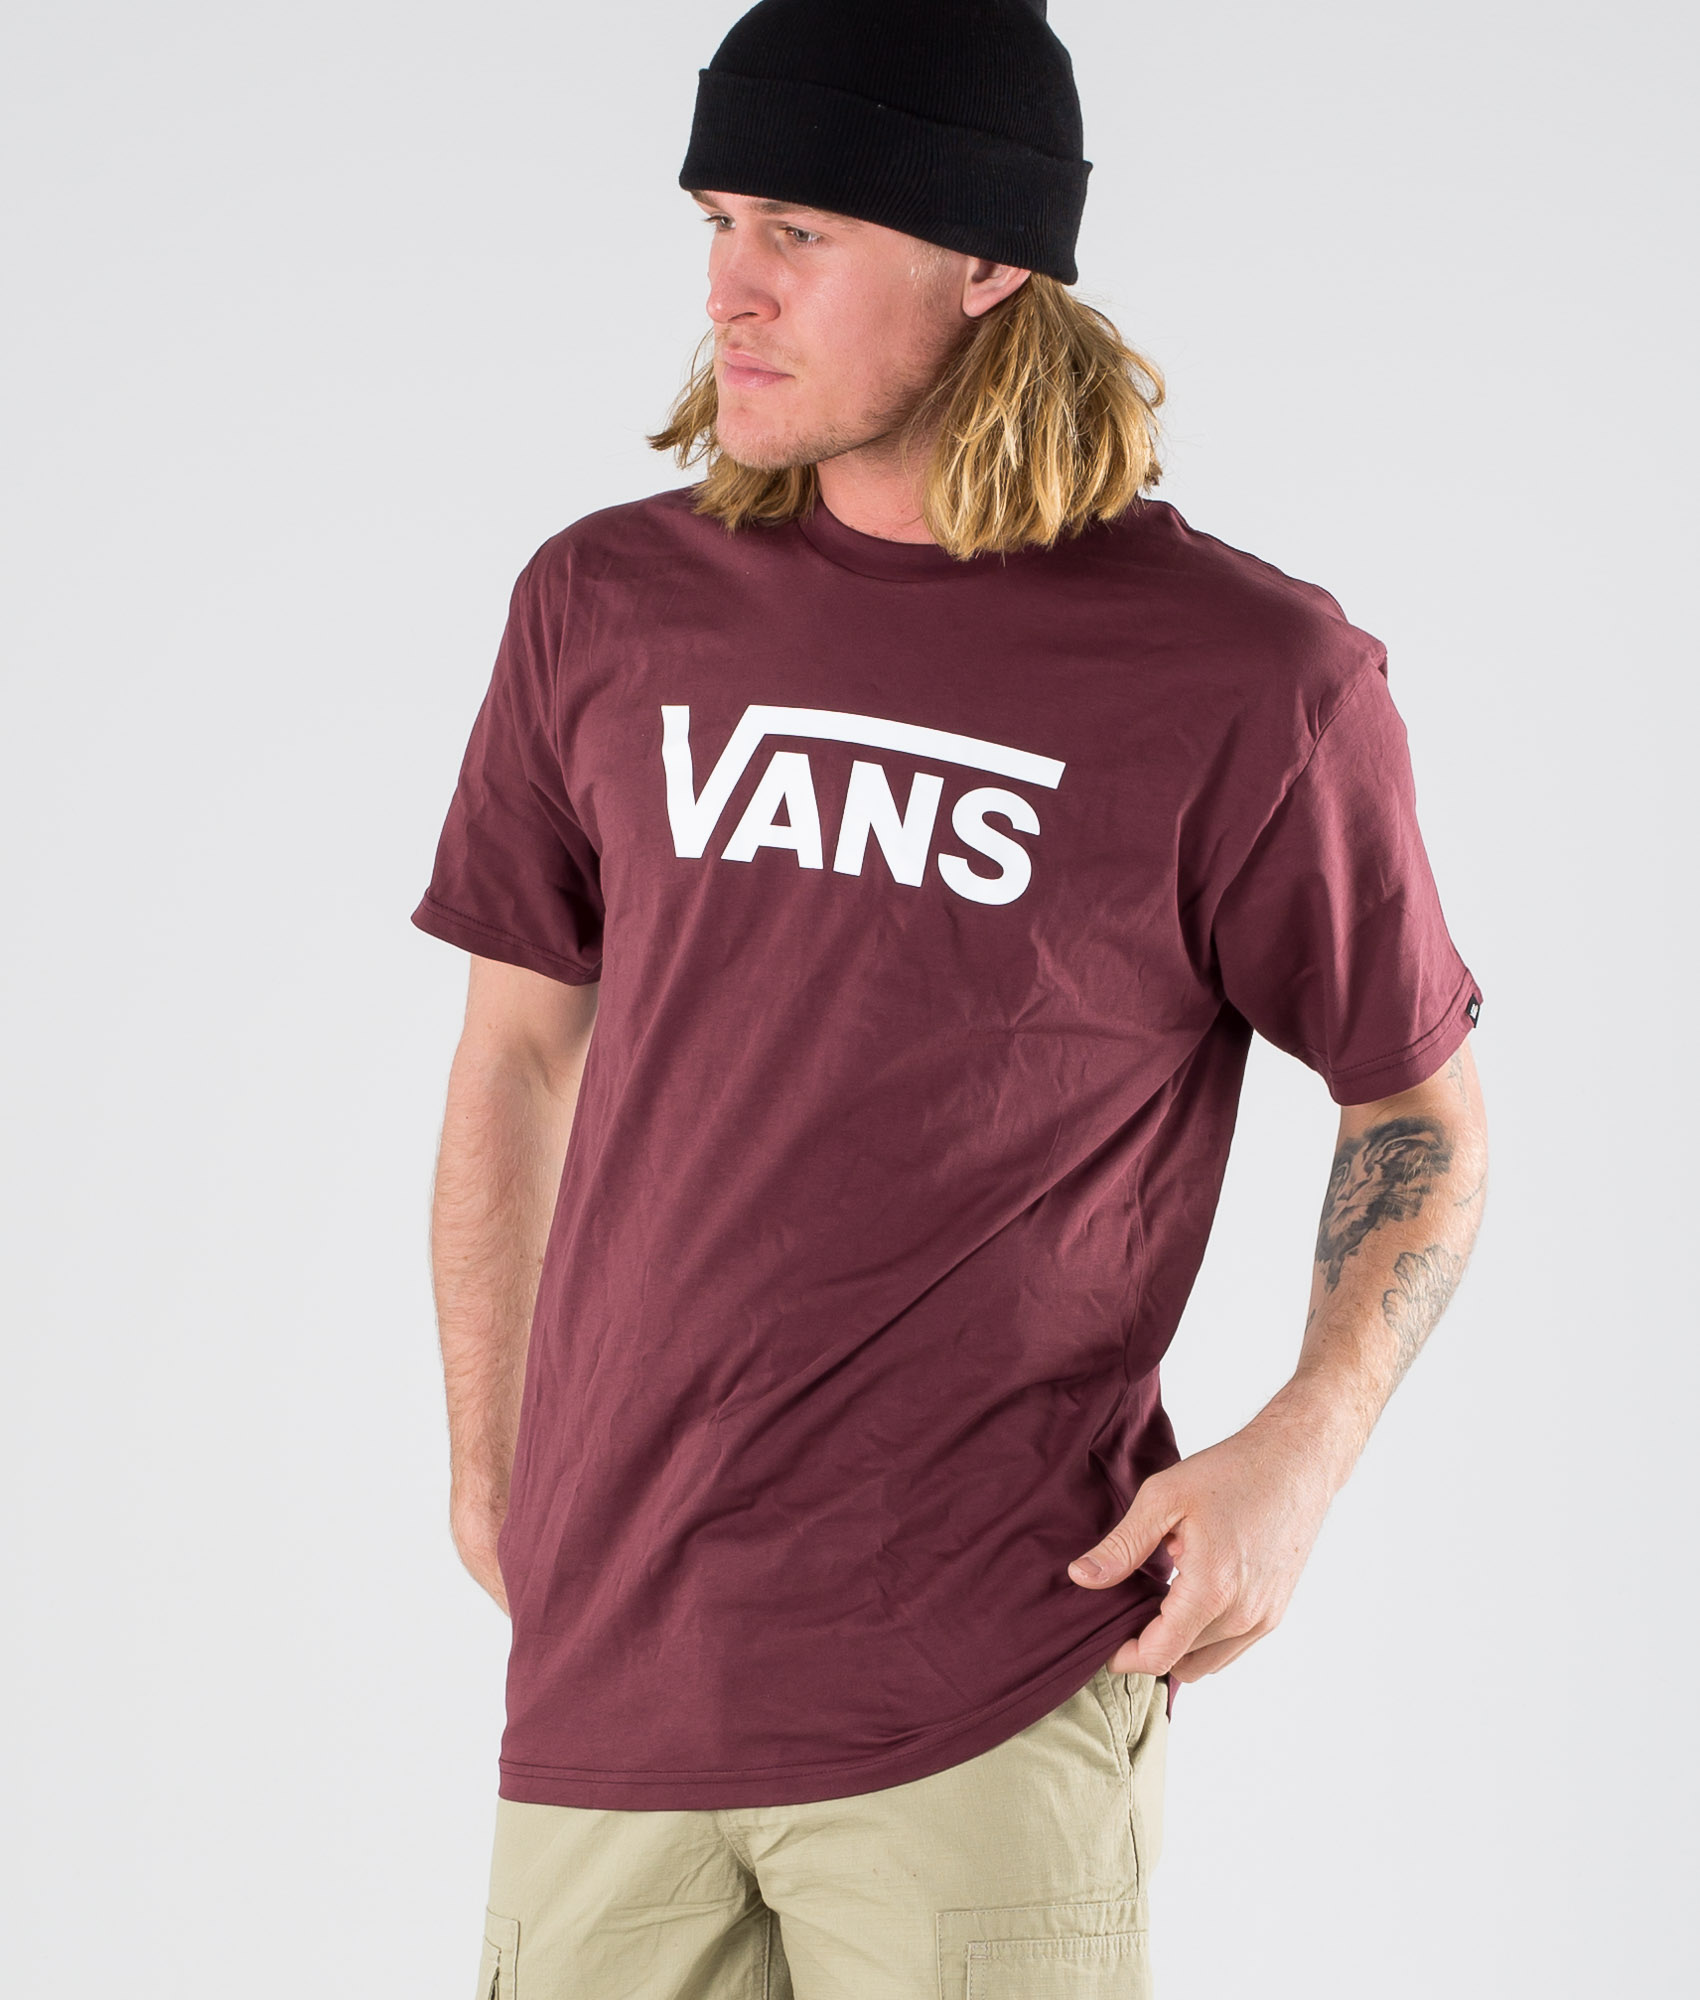 shirt and vans